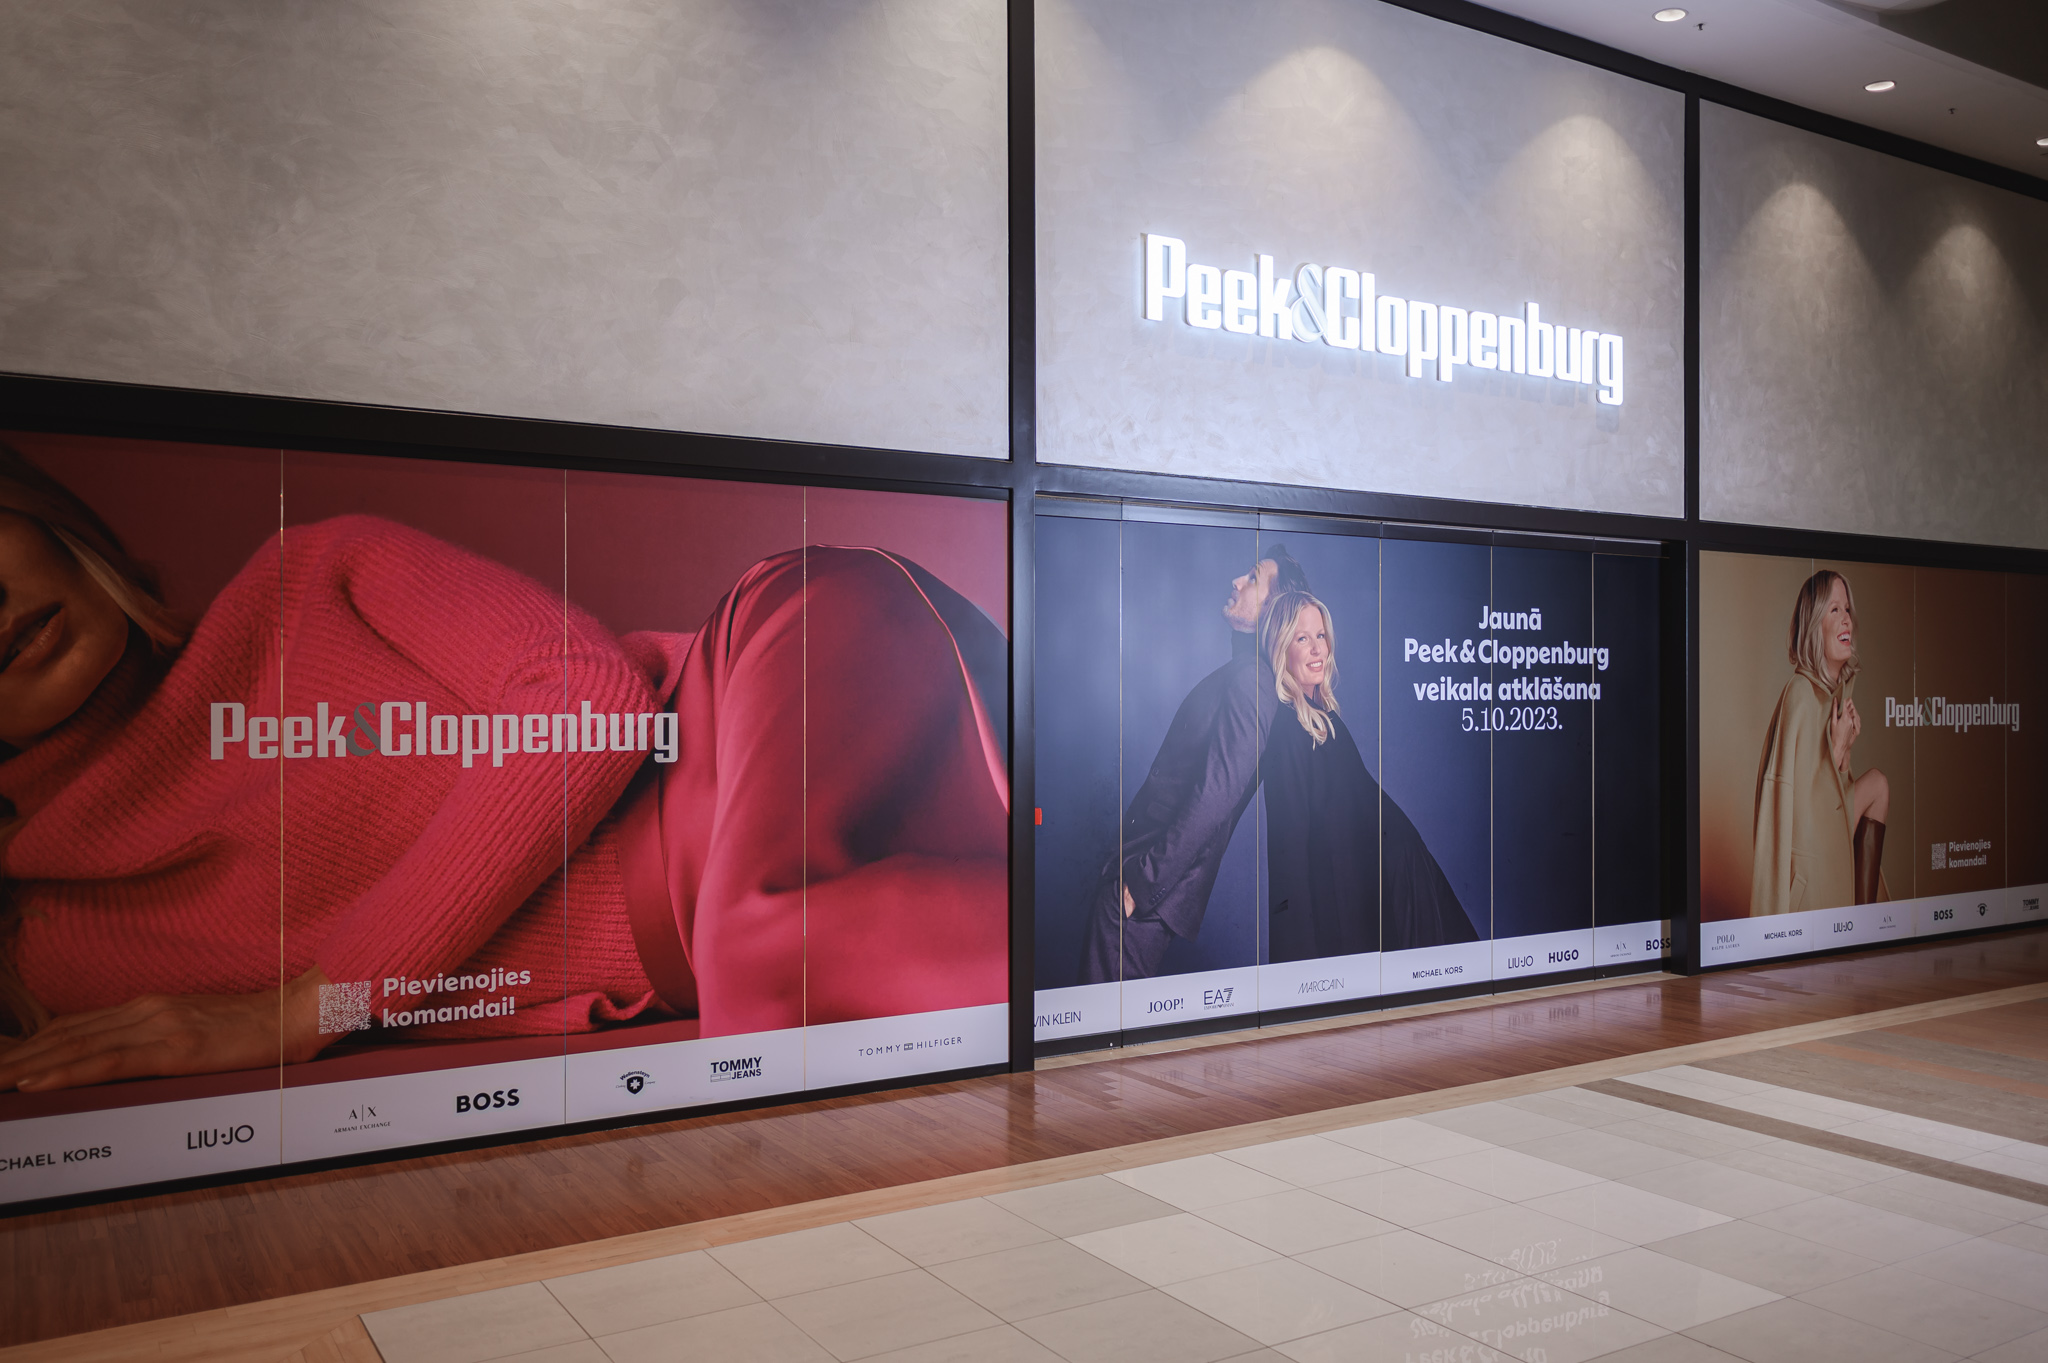 Rīt t/c “Domina Shopping” tiks atvērts Baltijā jaunākais modes preču veikals “Peek & Cloppenburg”